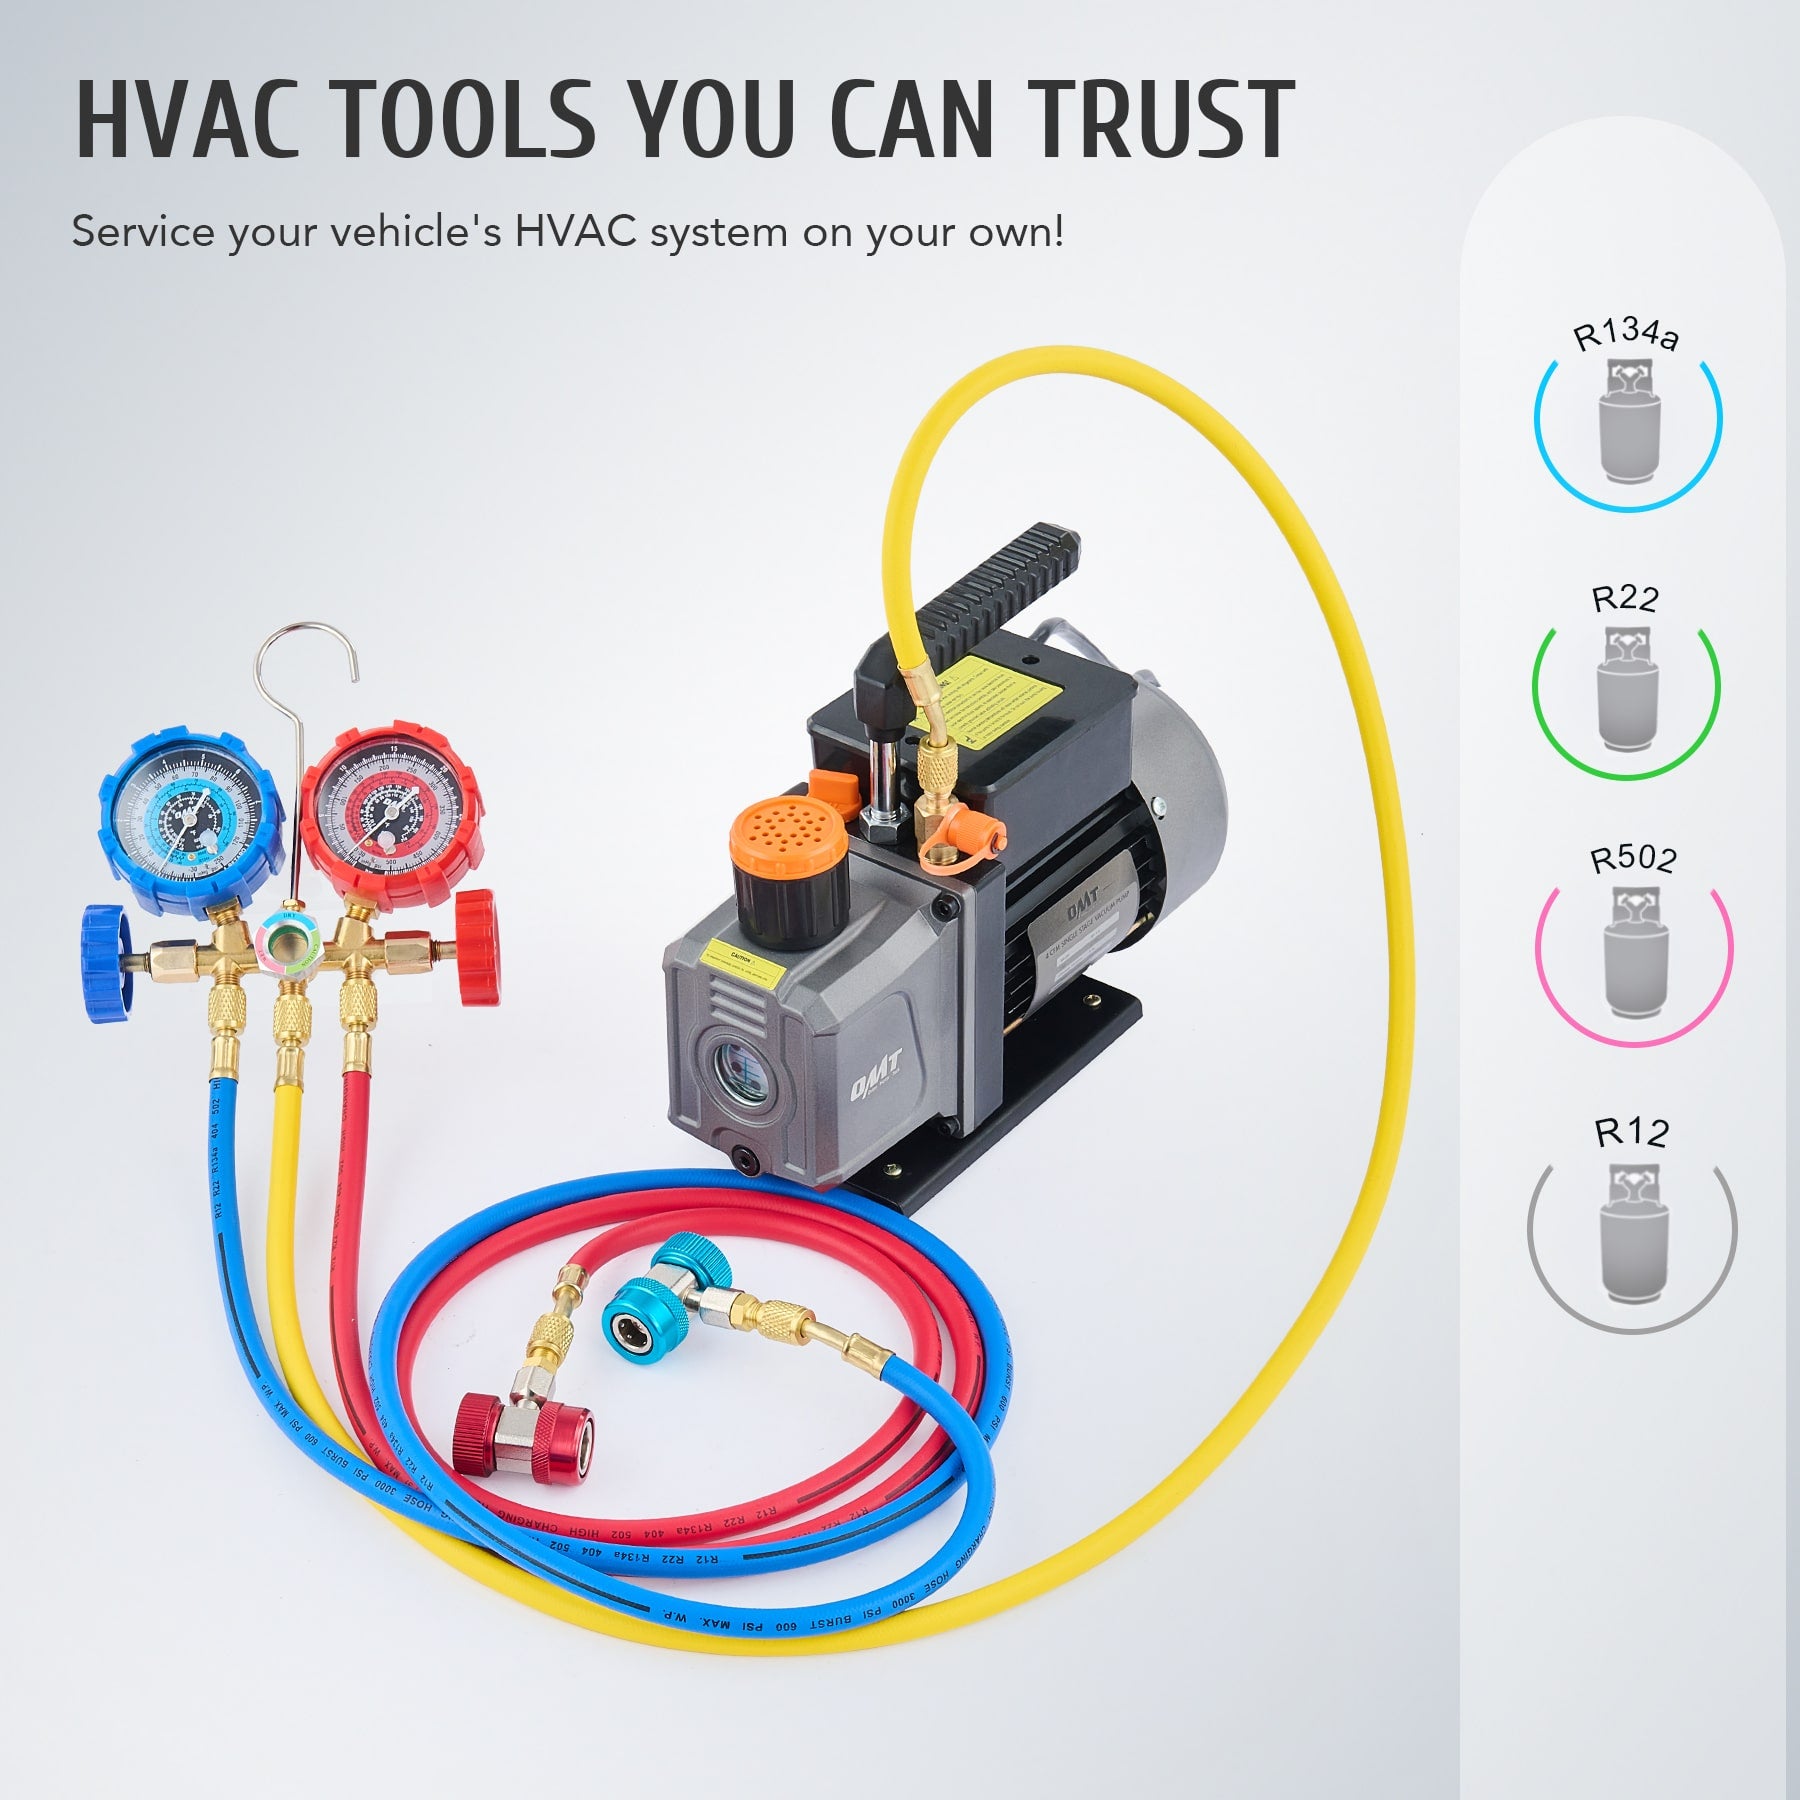 HAVC tools